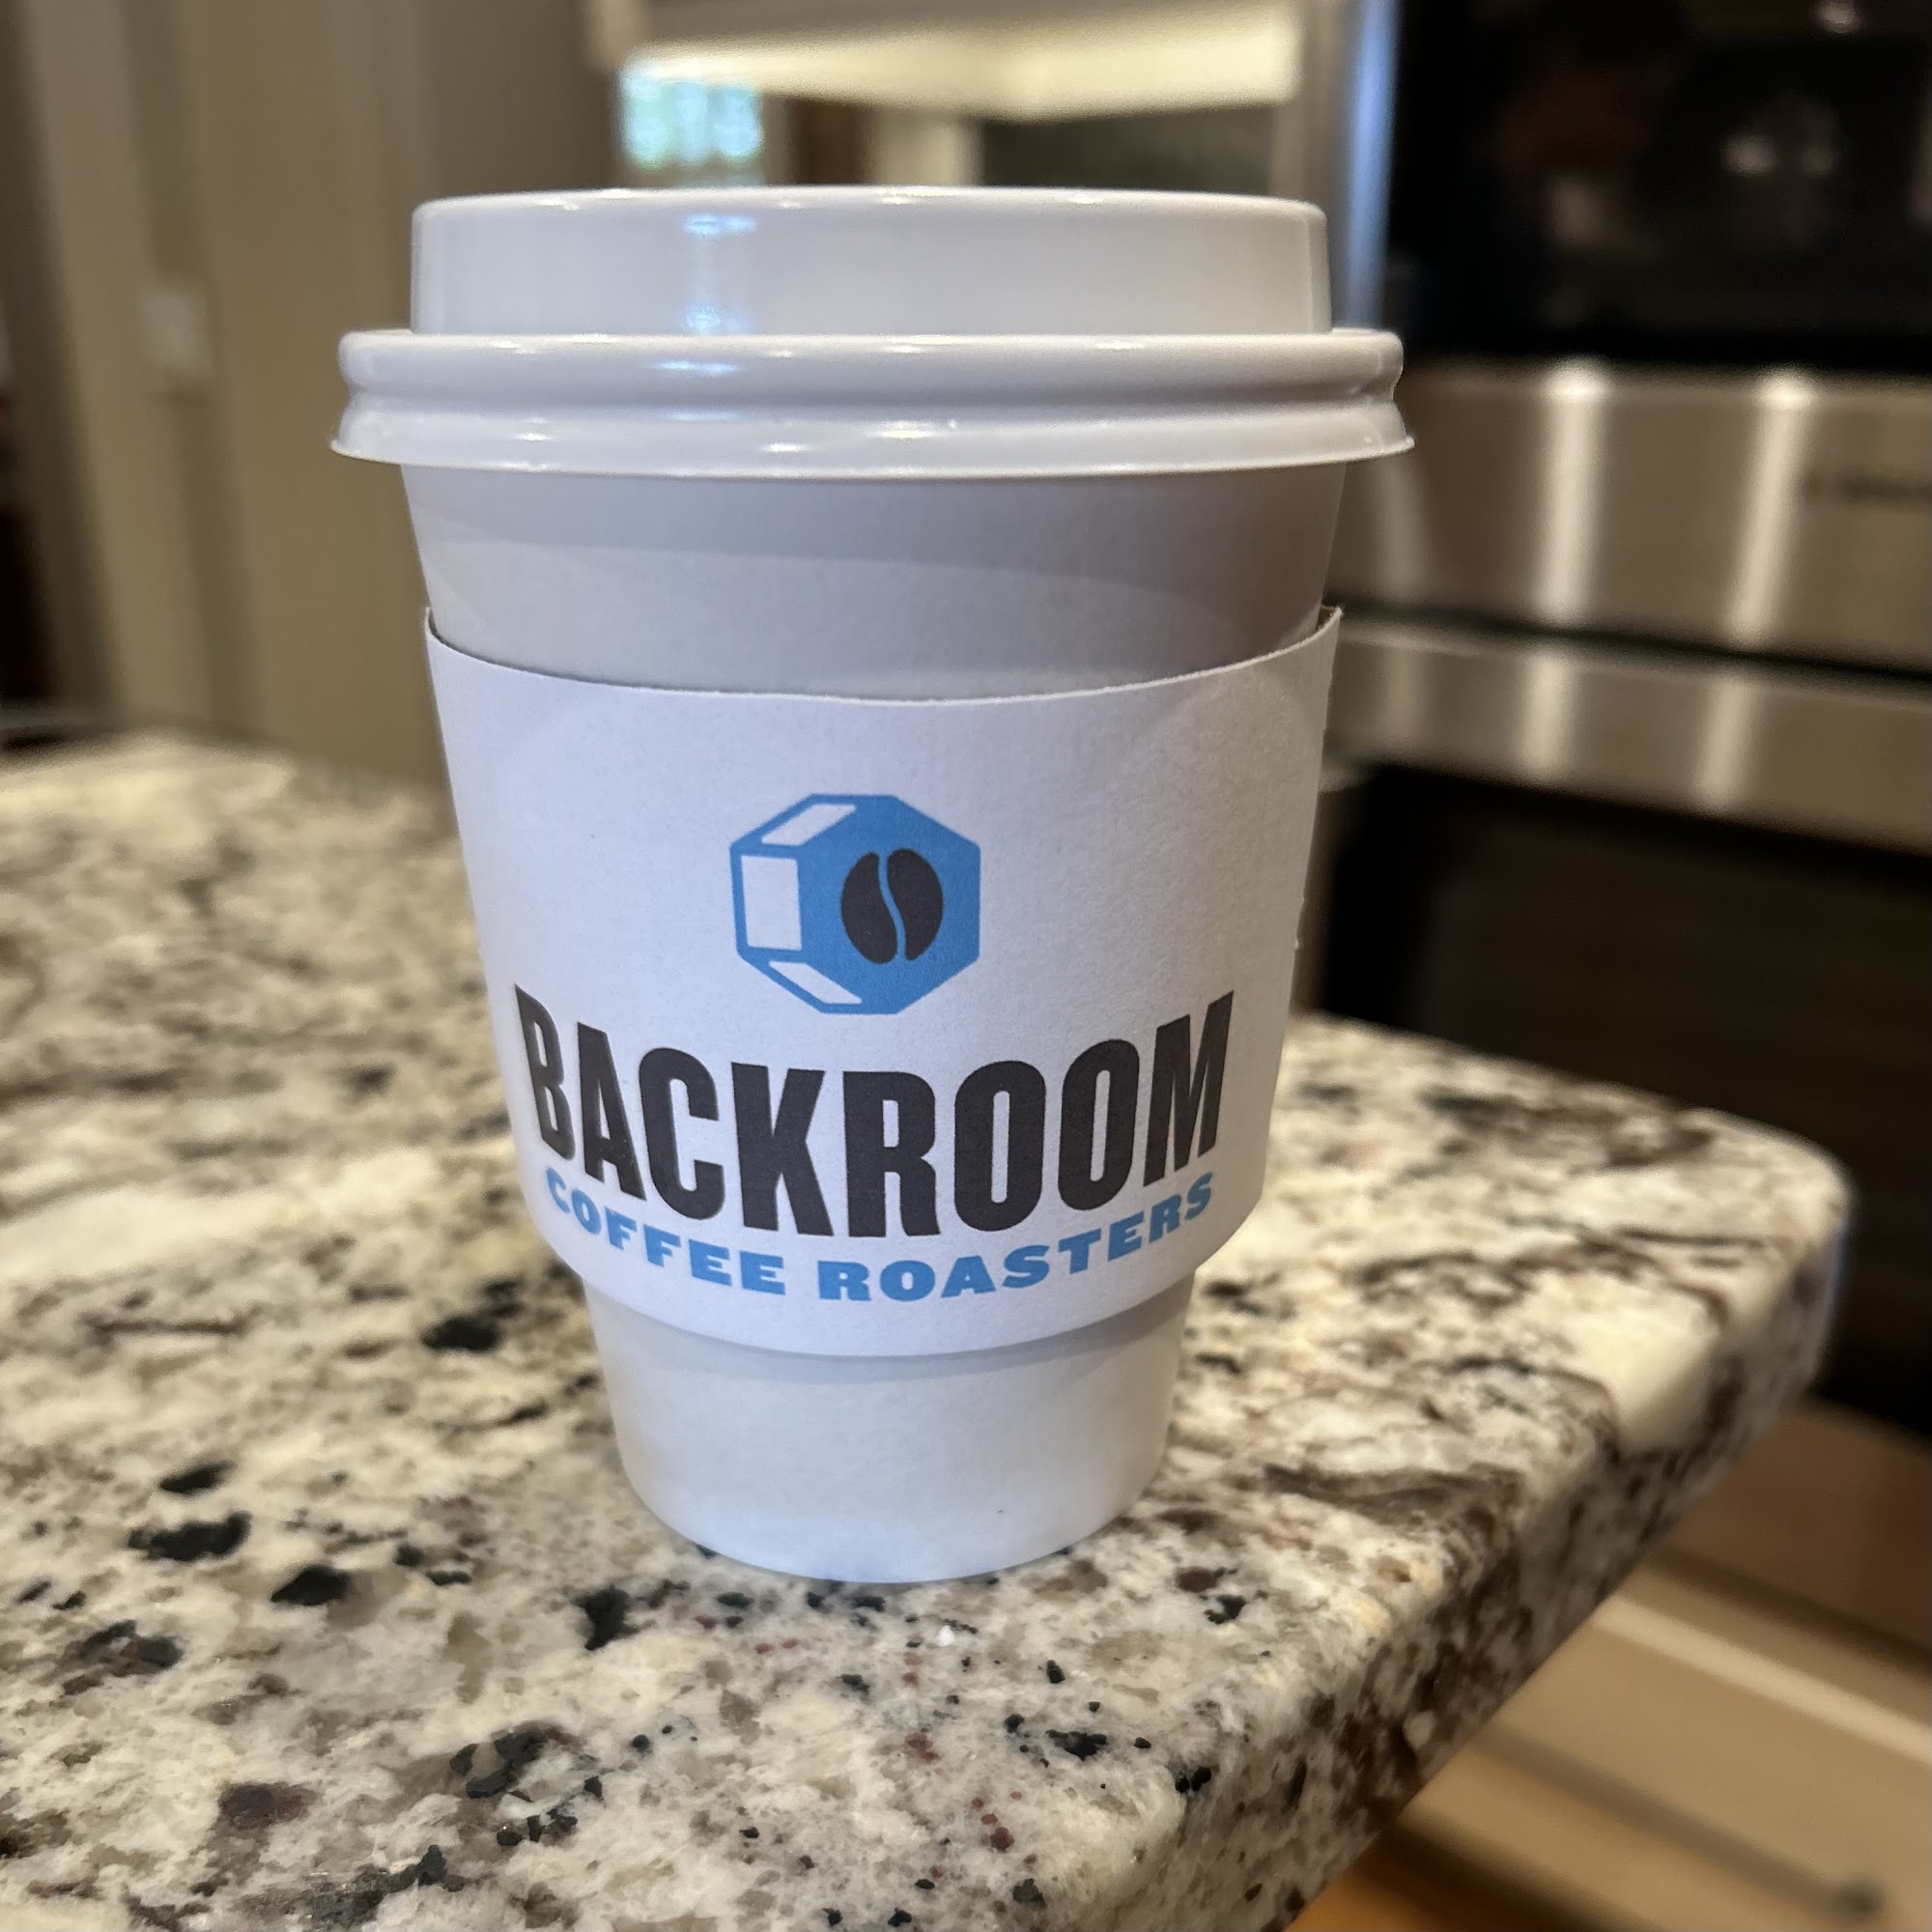 Backroom Coffee Roasters